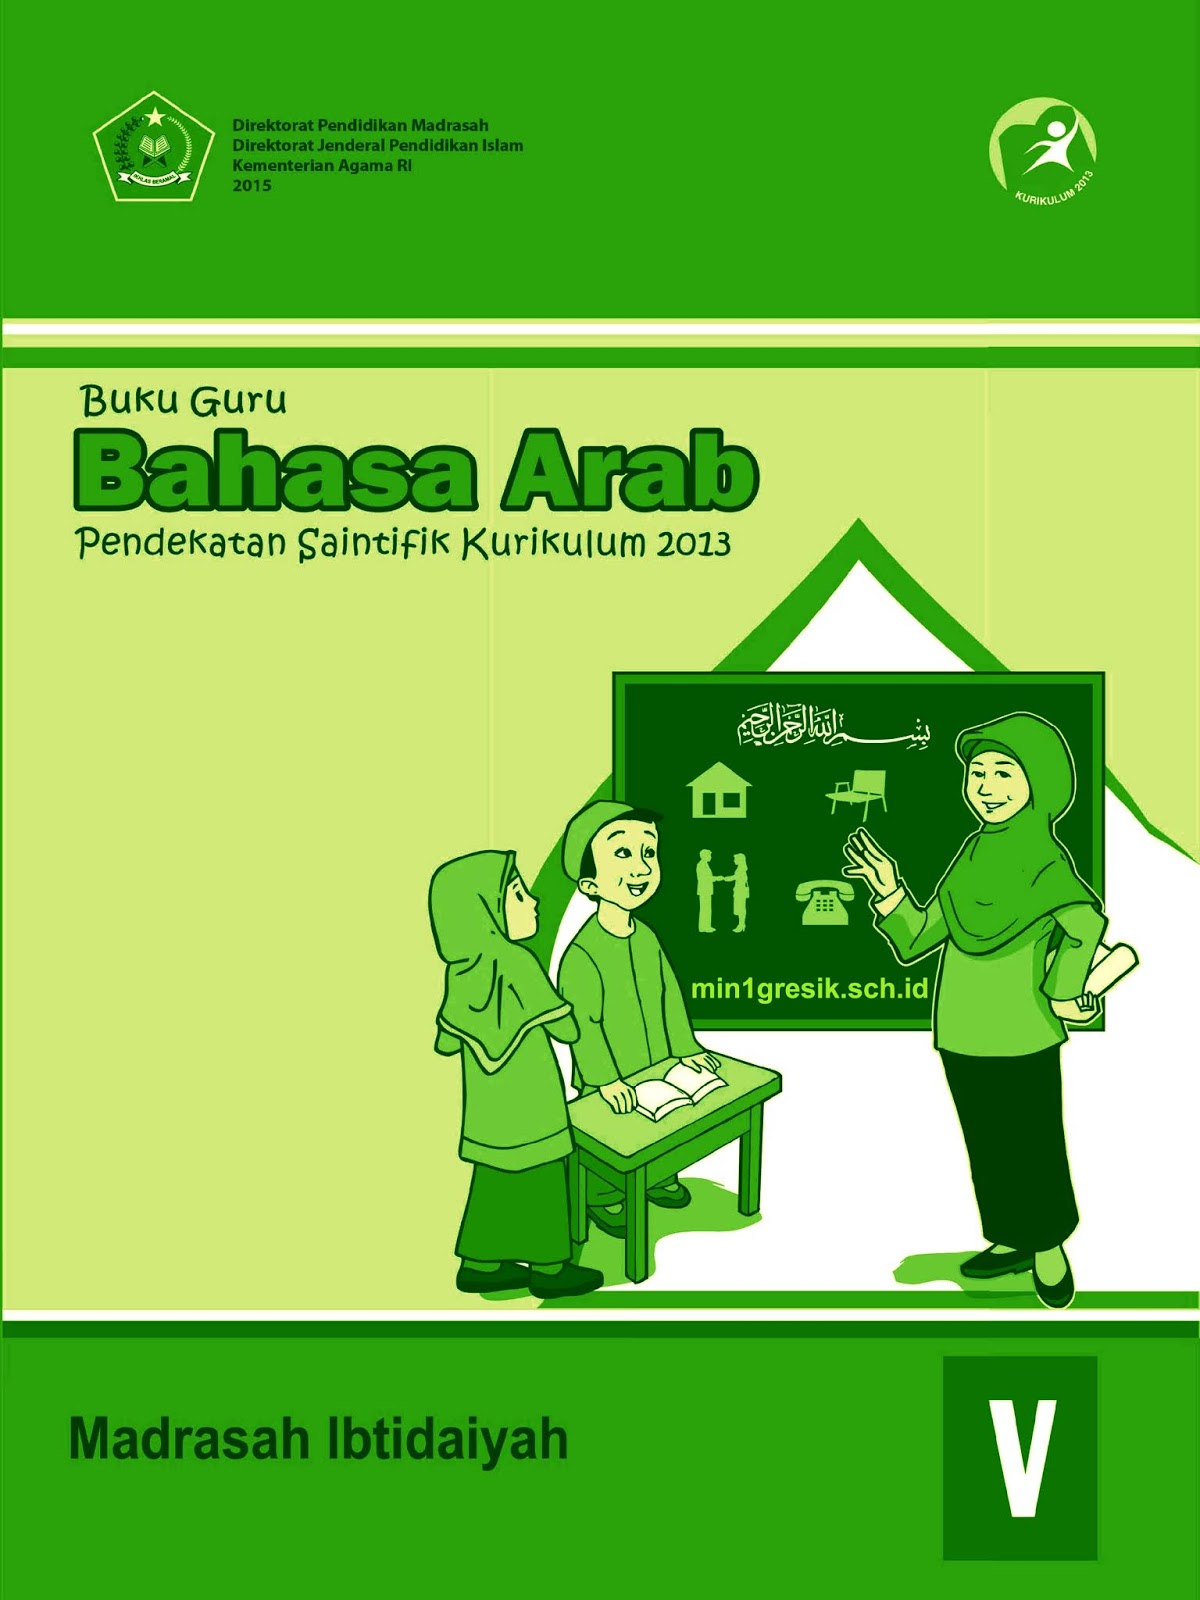 Buku Guru Mata Pelajaran Bahasa Arab Kelas 5 (lima) Madrasah Ibtidaiyah